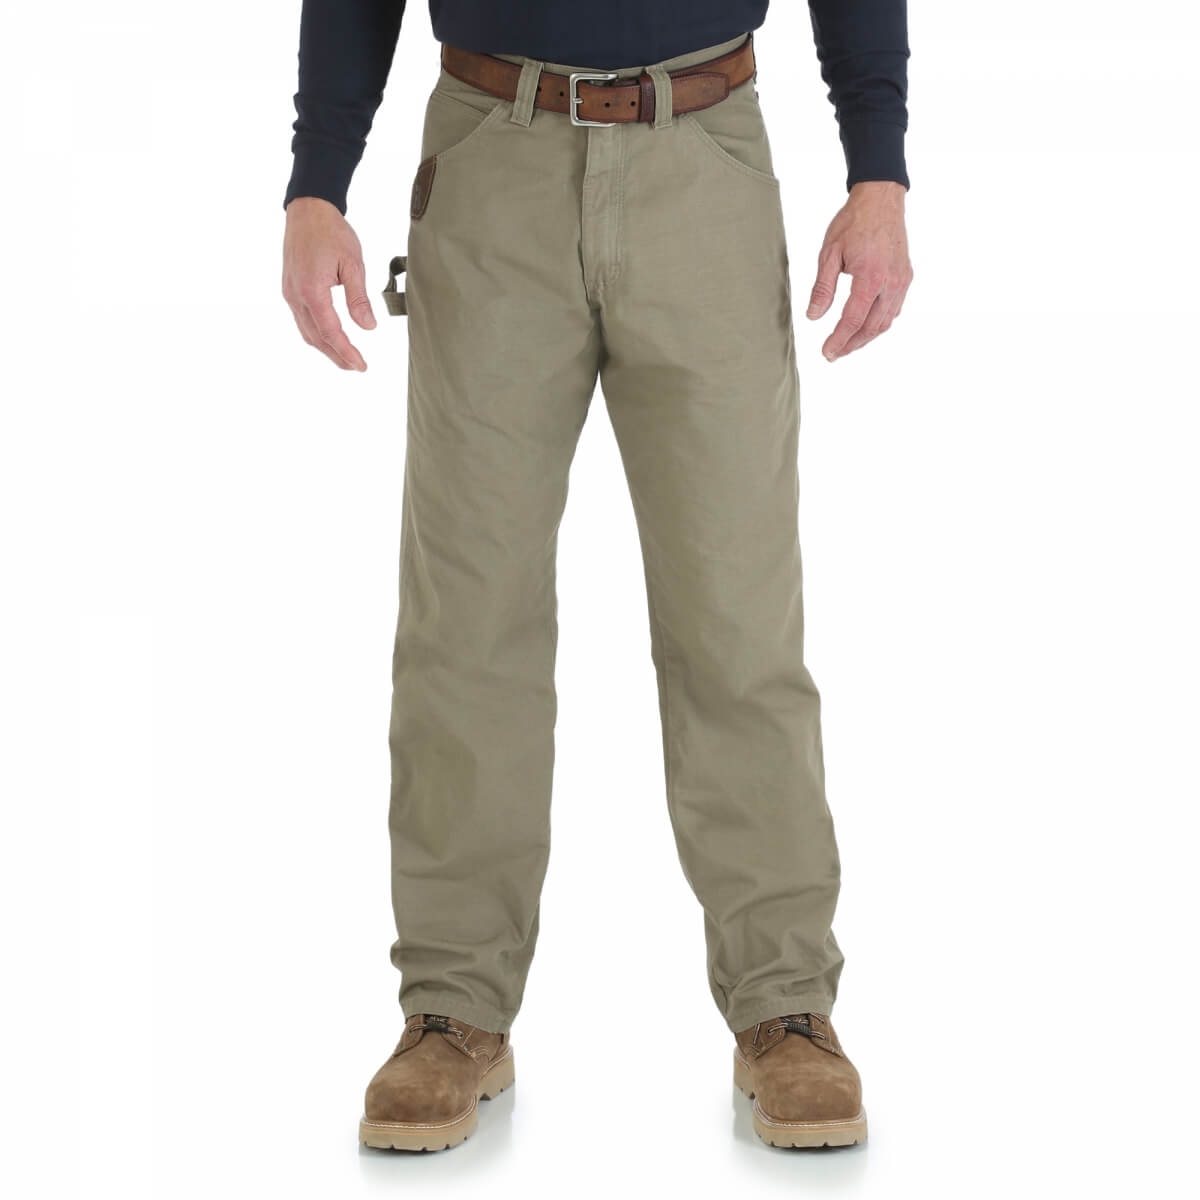 Riggs® Men's Wrangler® Ripstop Carpenter Jeans - Fort Brands